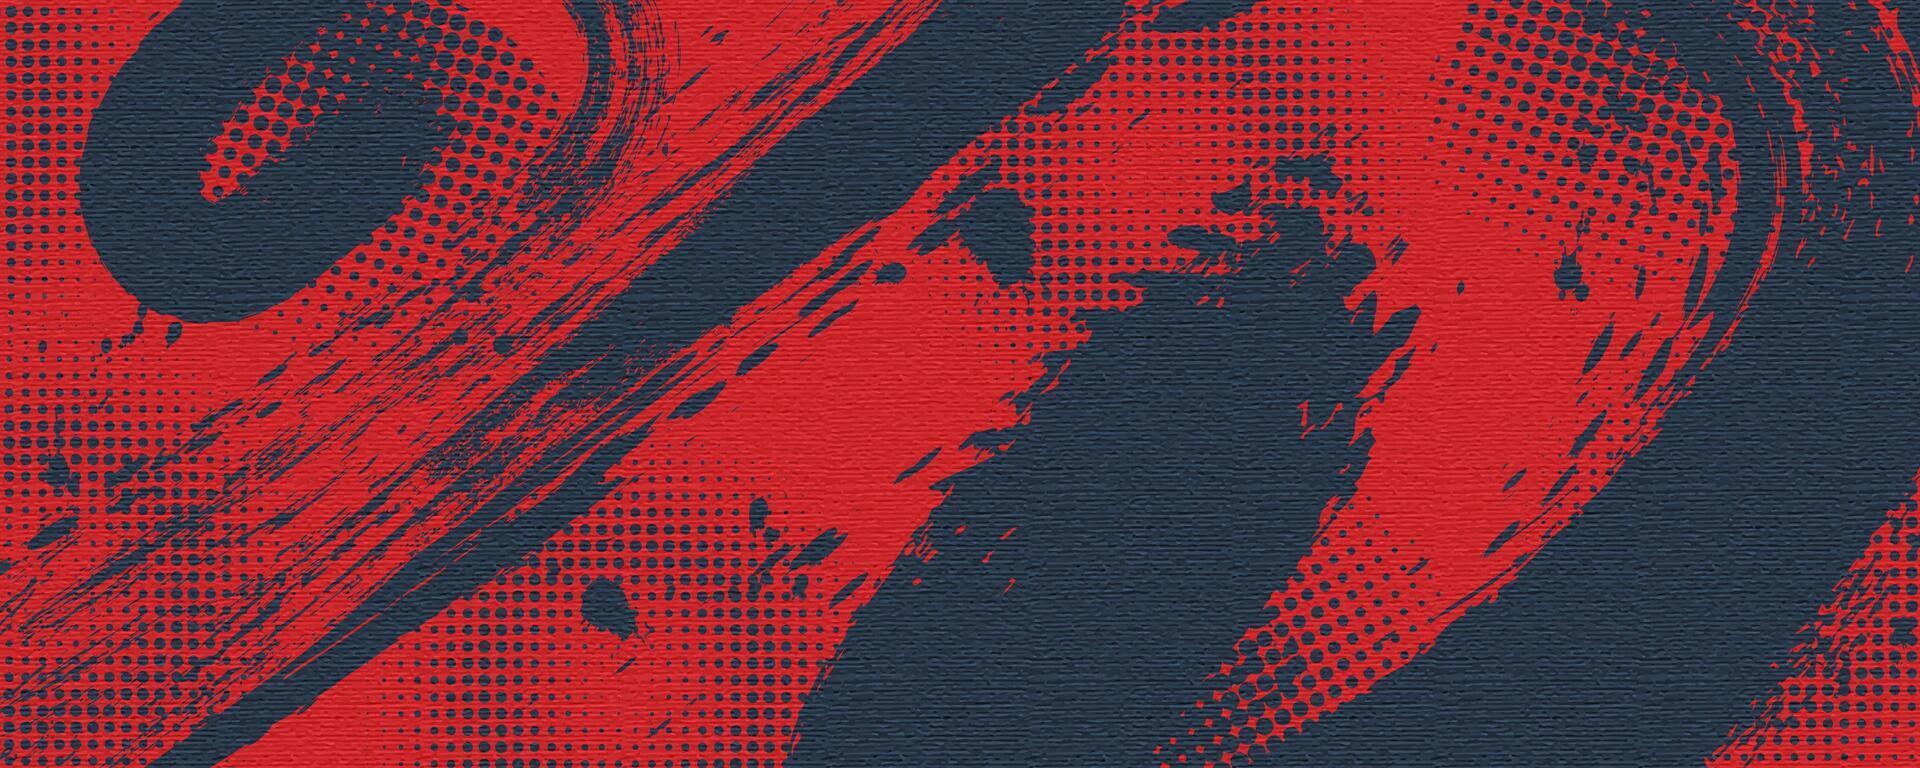 röd och blå borsta bakgrund med halvton och textur effekt. retro sporter bakgrund med grunge begrepp vektor